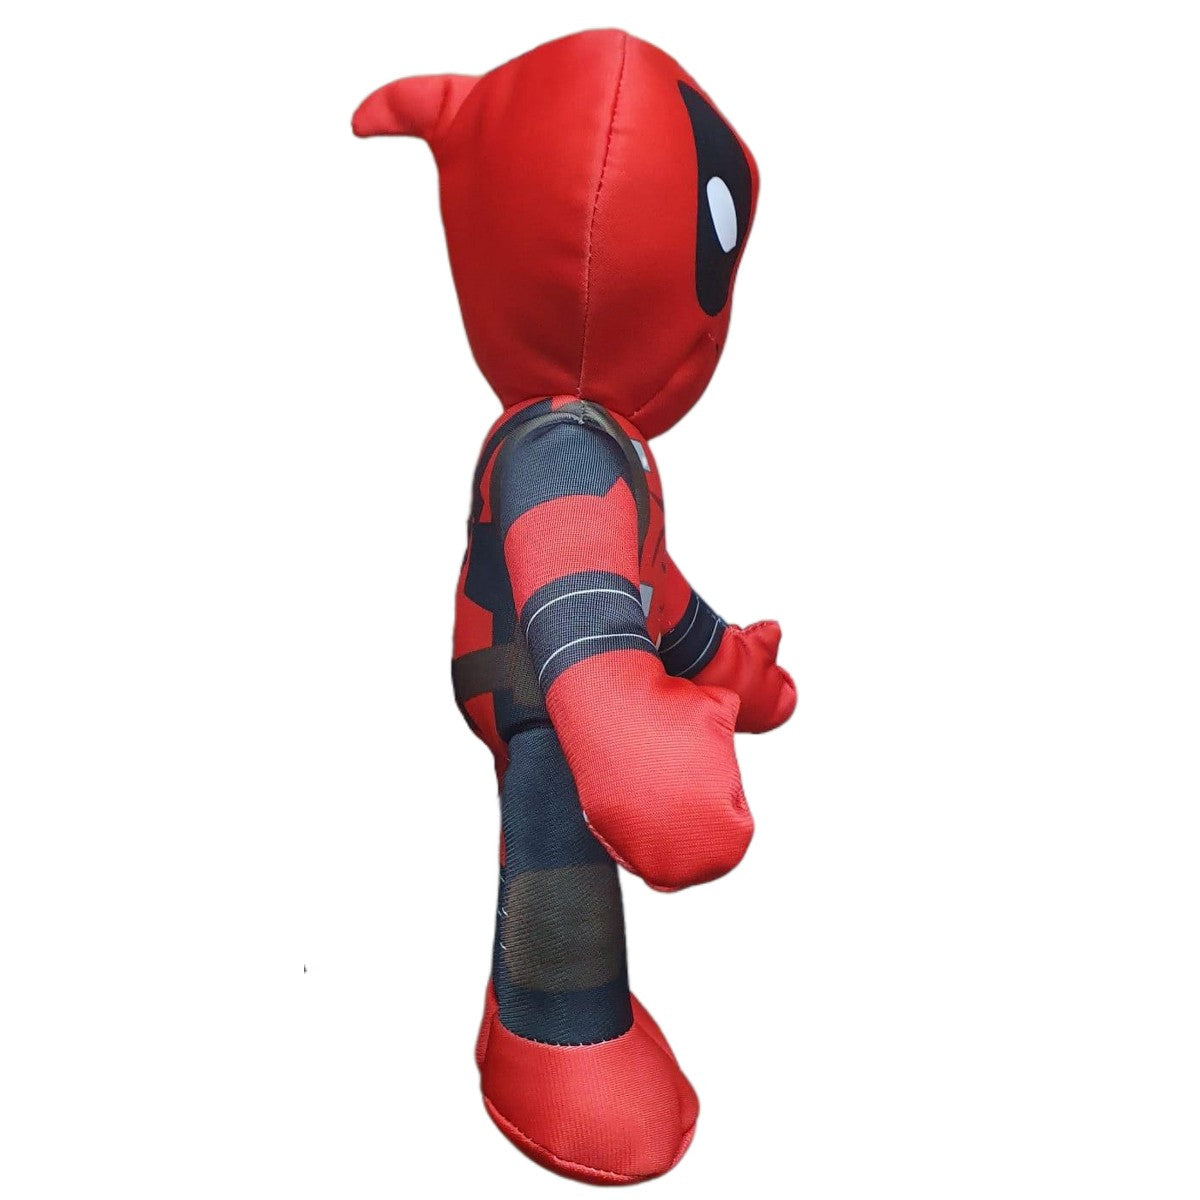 Peluche Marvel - Deadpool 30cm